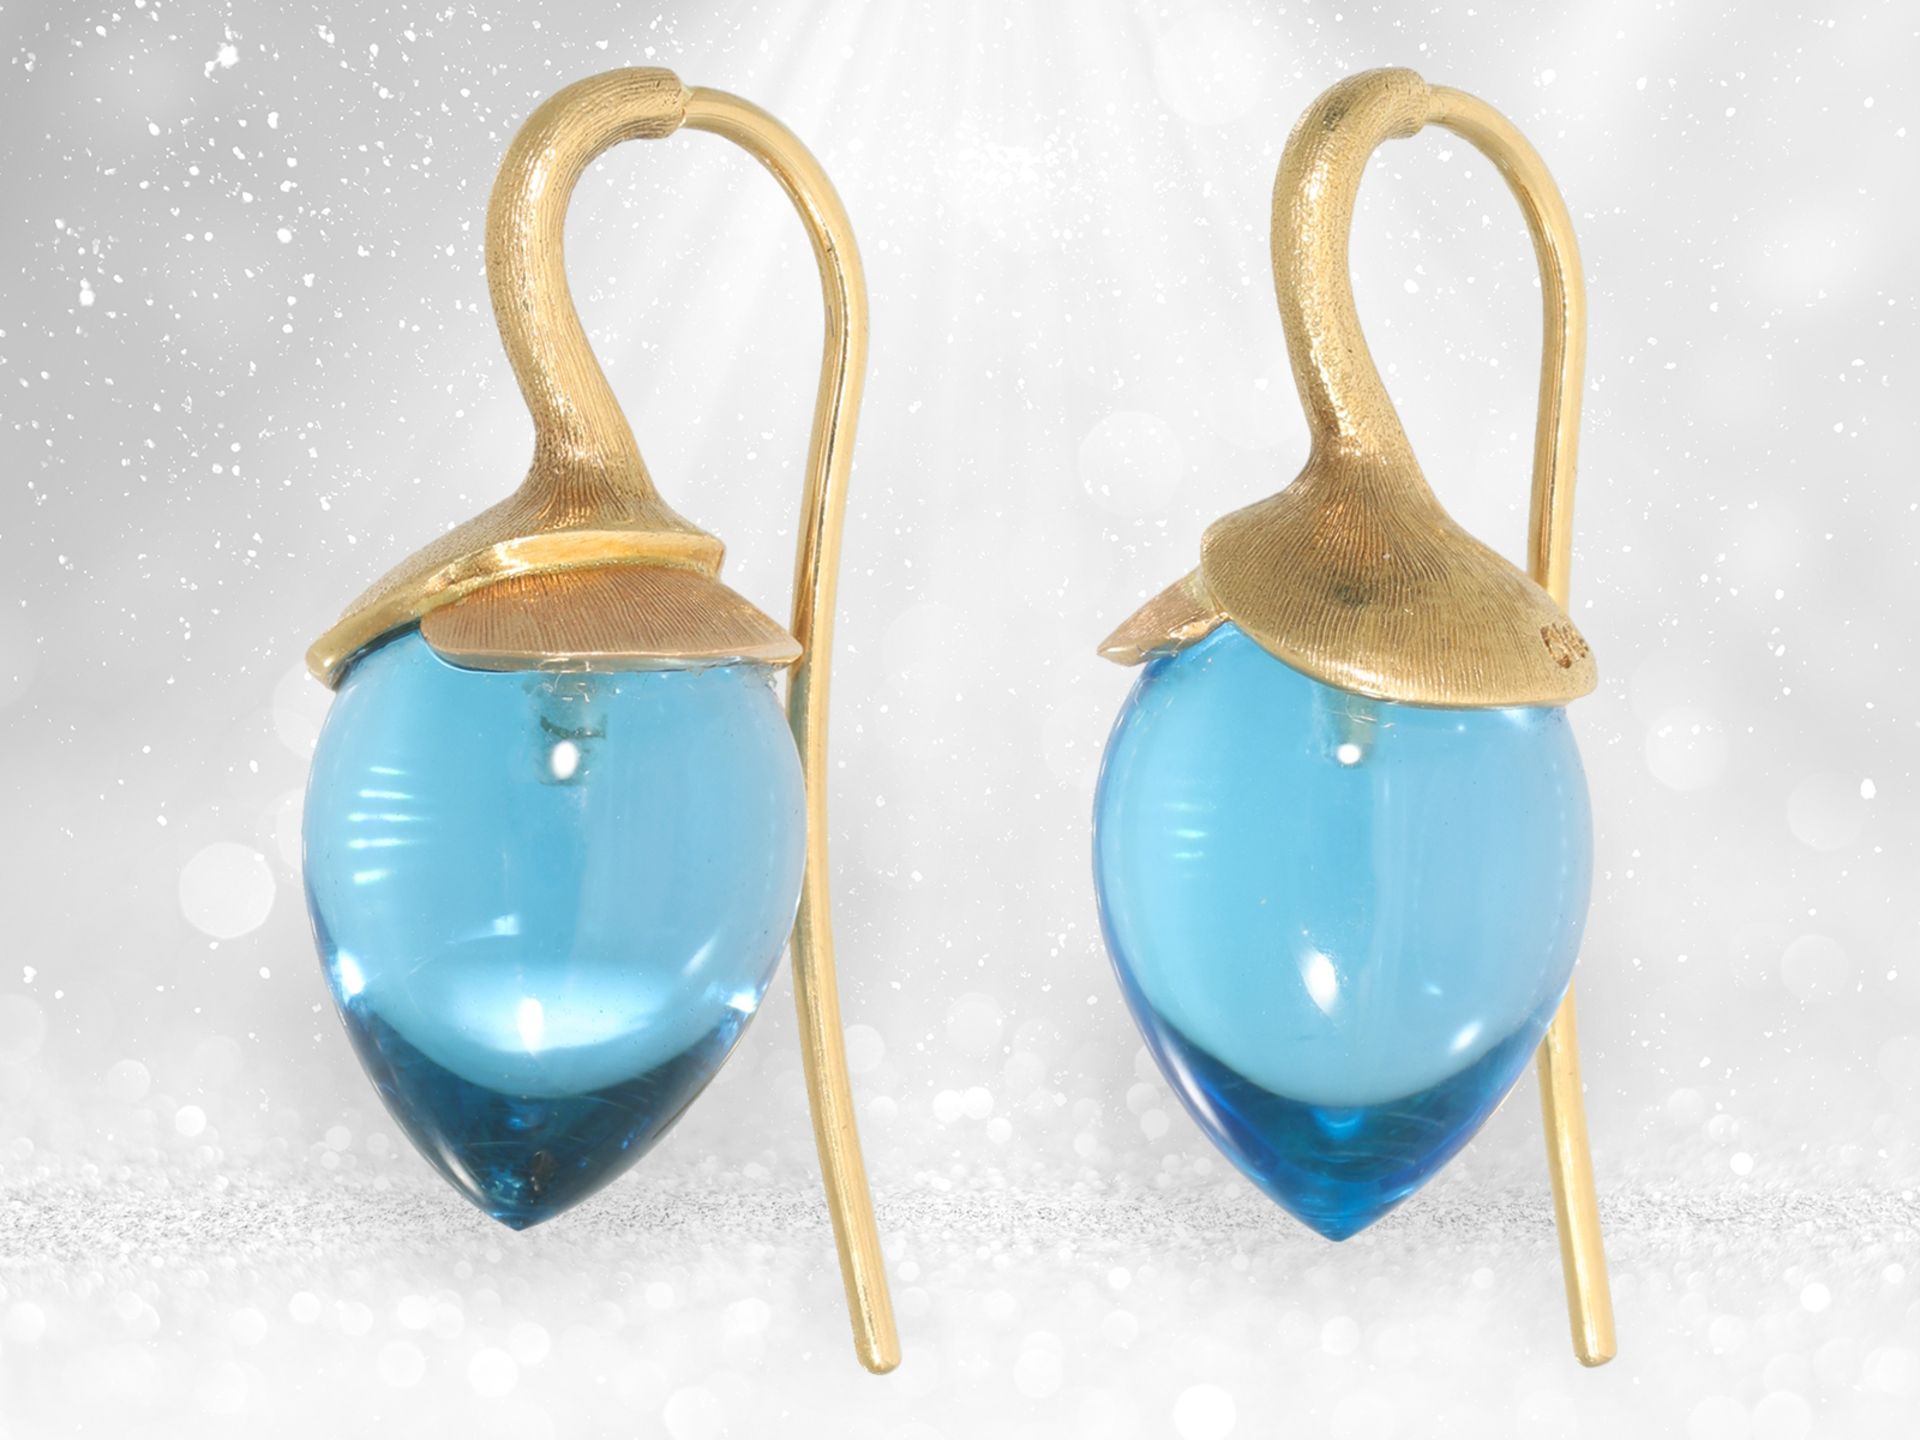 Ausgefallene goldene Designer-Topas-Ohrringe aus dem Hause Ole Lynggaard, Modell "Lotus Drop" - Bild 3 aus 4